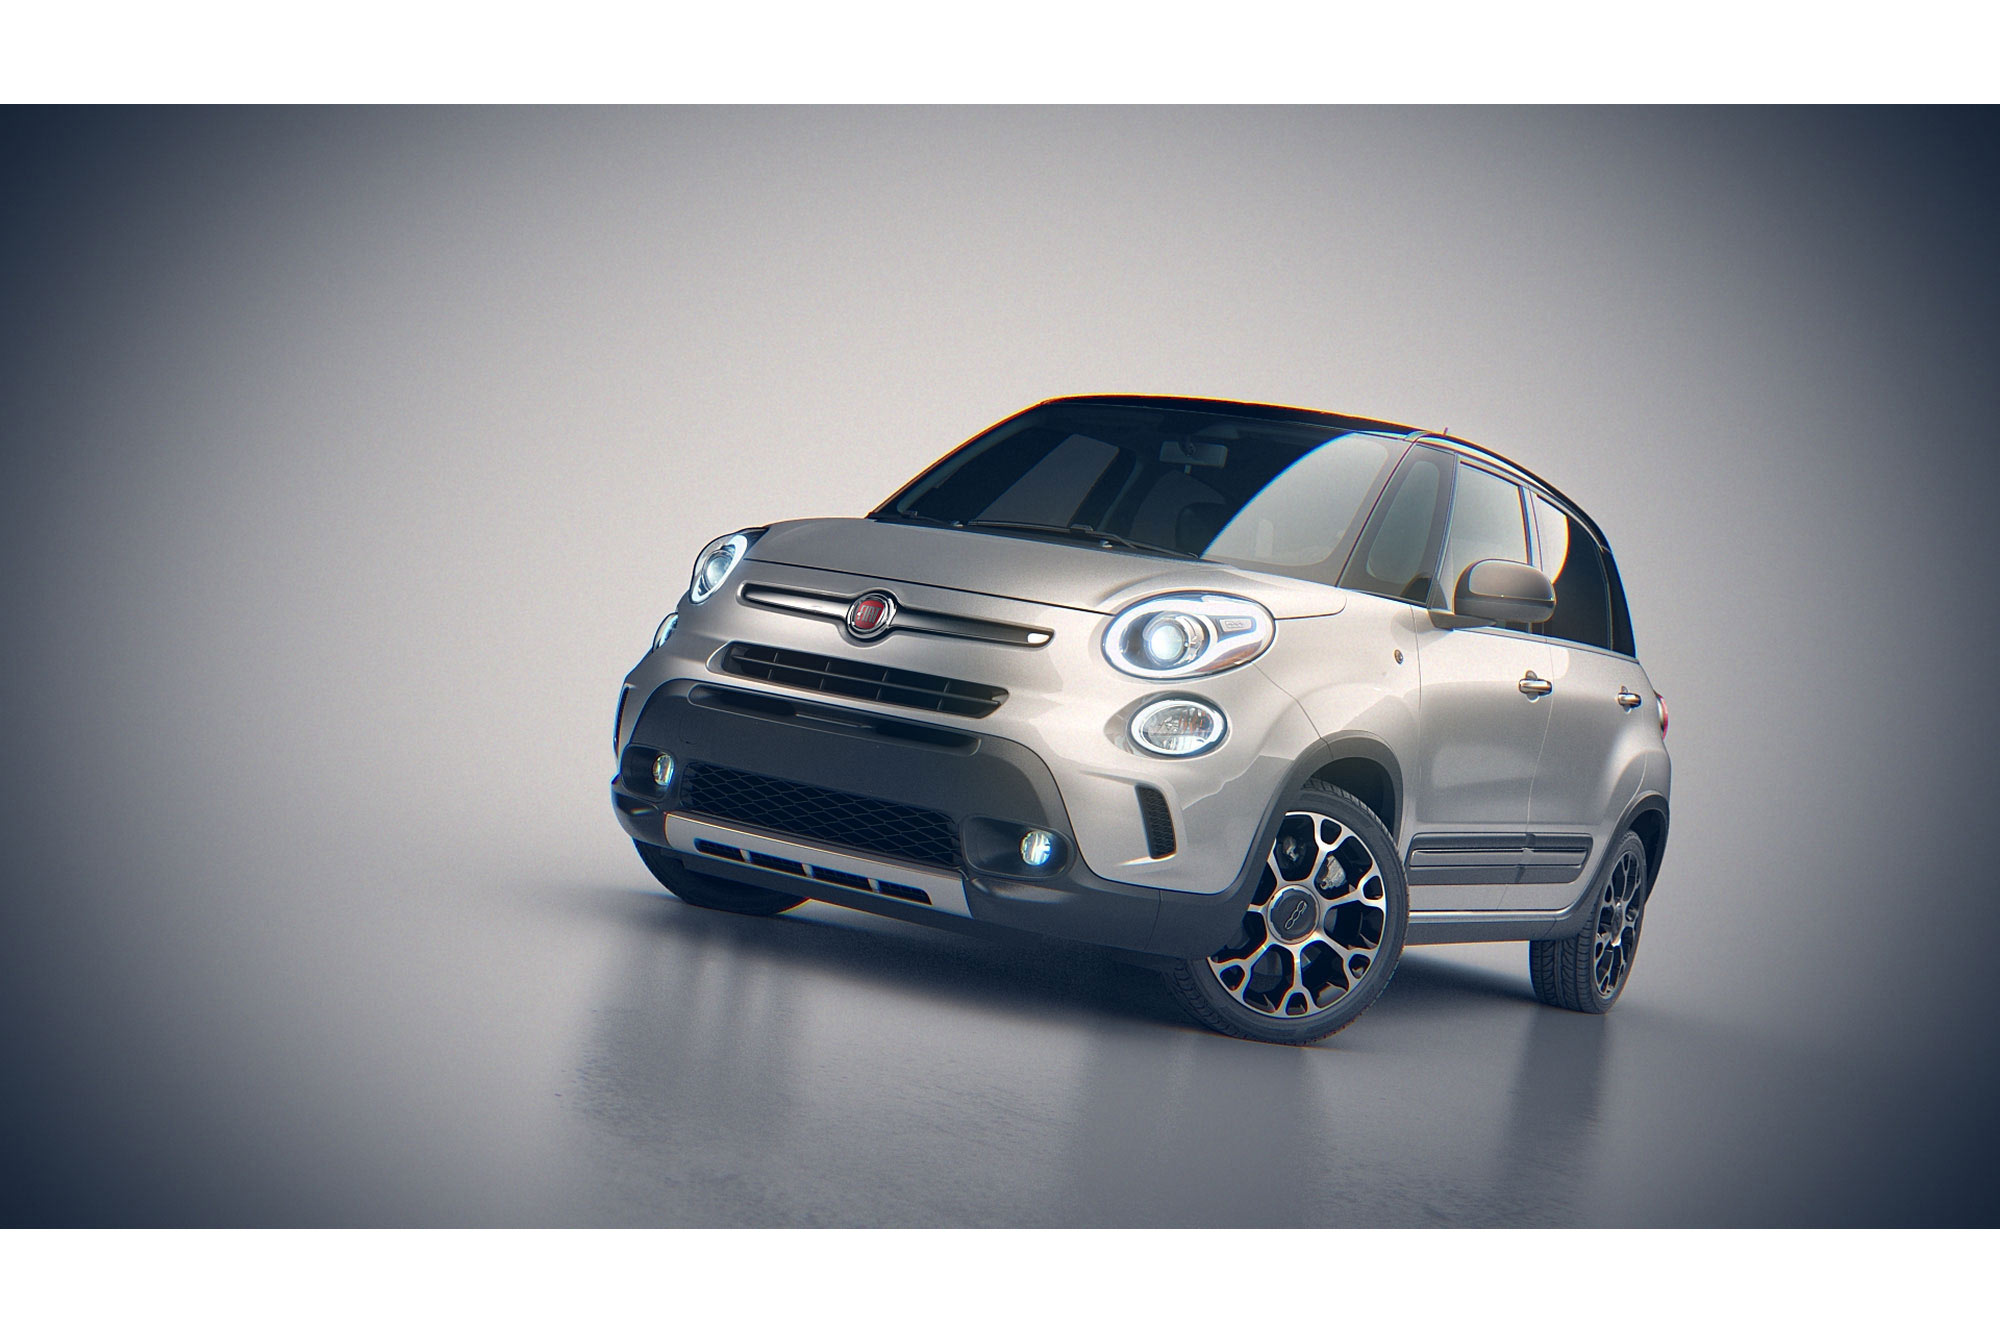 Fiat - CGI by Digital Image